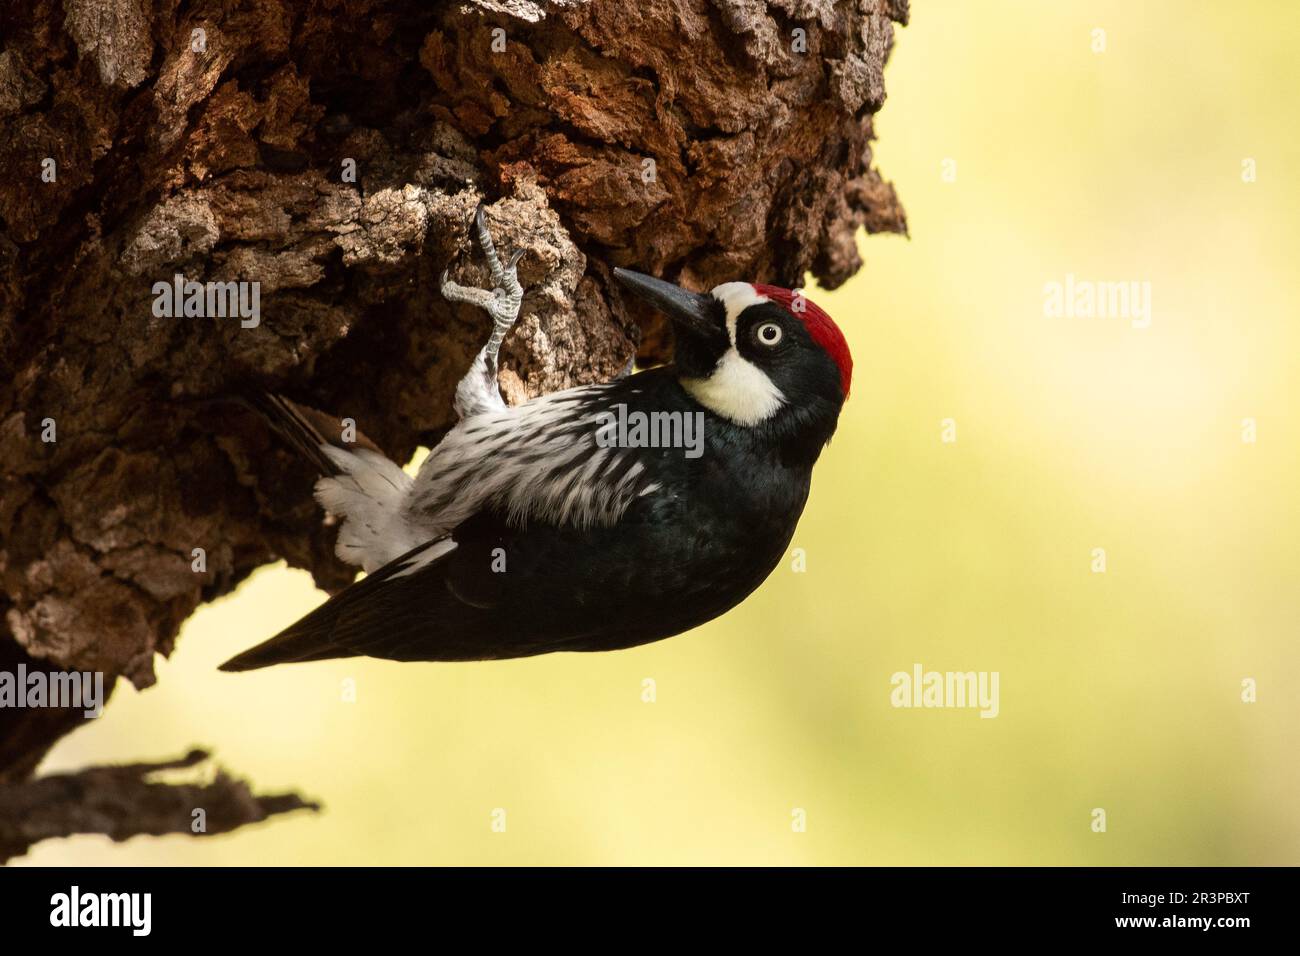 Acorn woodpecker clinging onto a tree Stock Photo